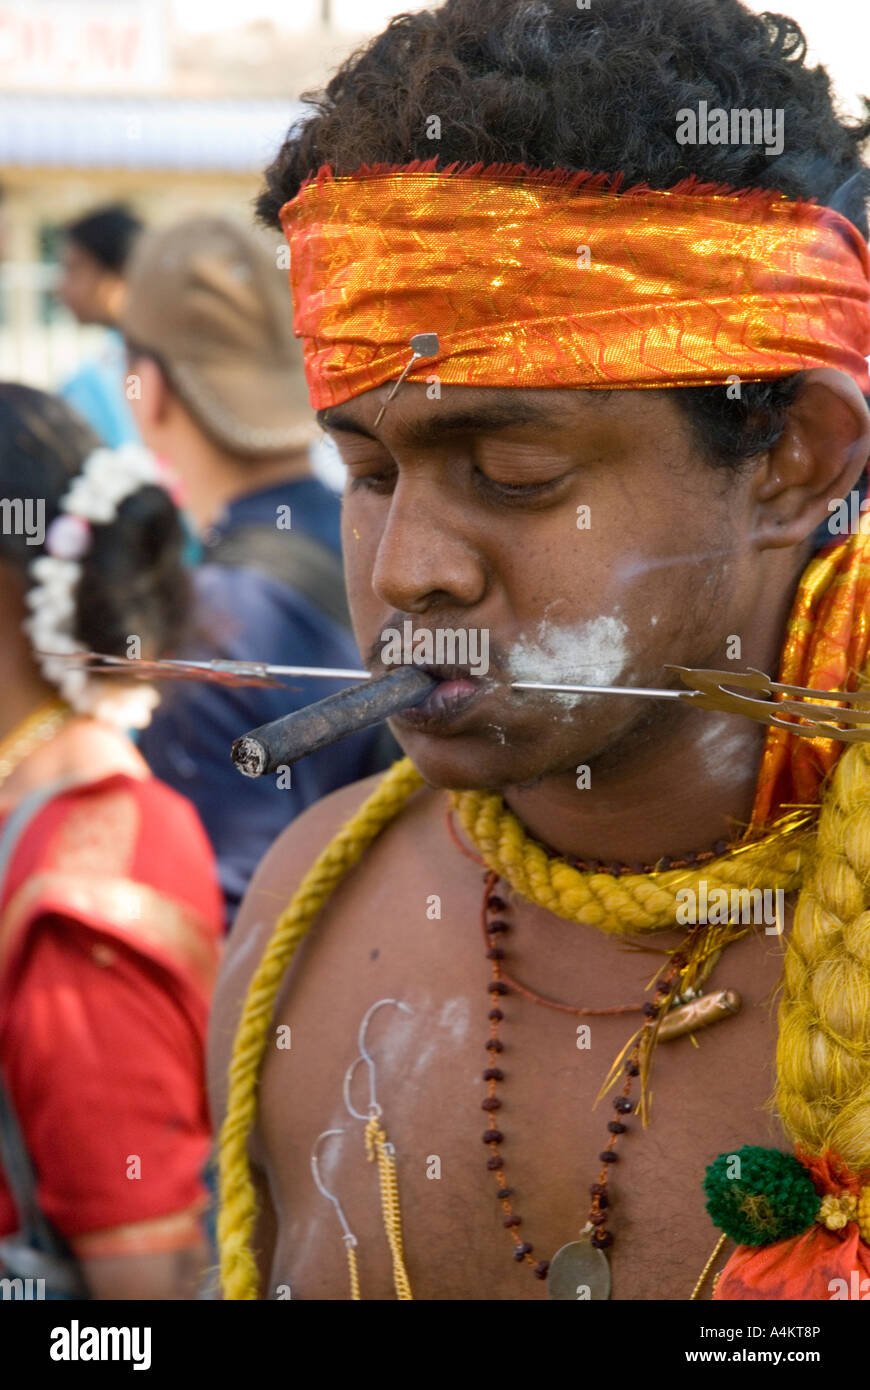 Les Indiens de Malaisie célèbrent Thaipusam à Georgetown Penang. Un dévot fume un chéroot avec son visage percé Banque D'Images